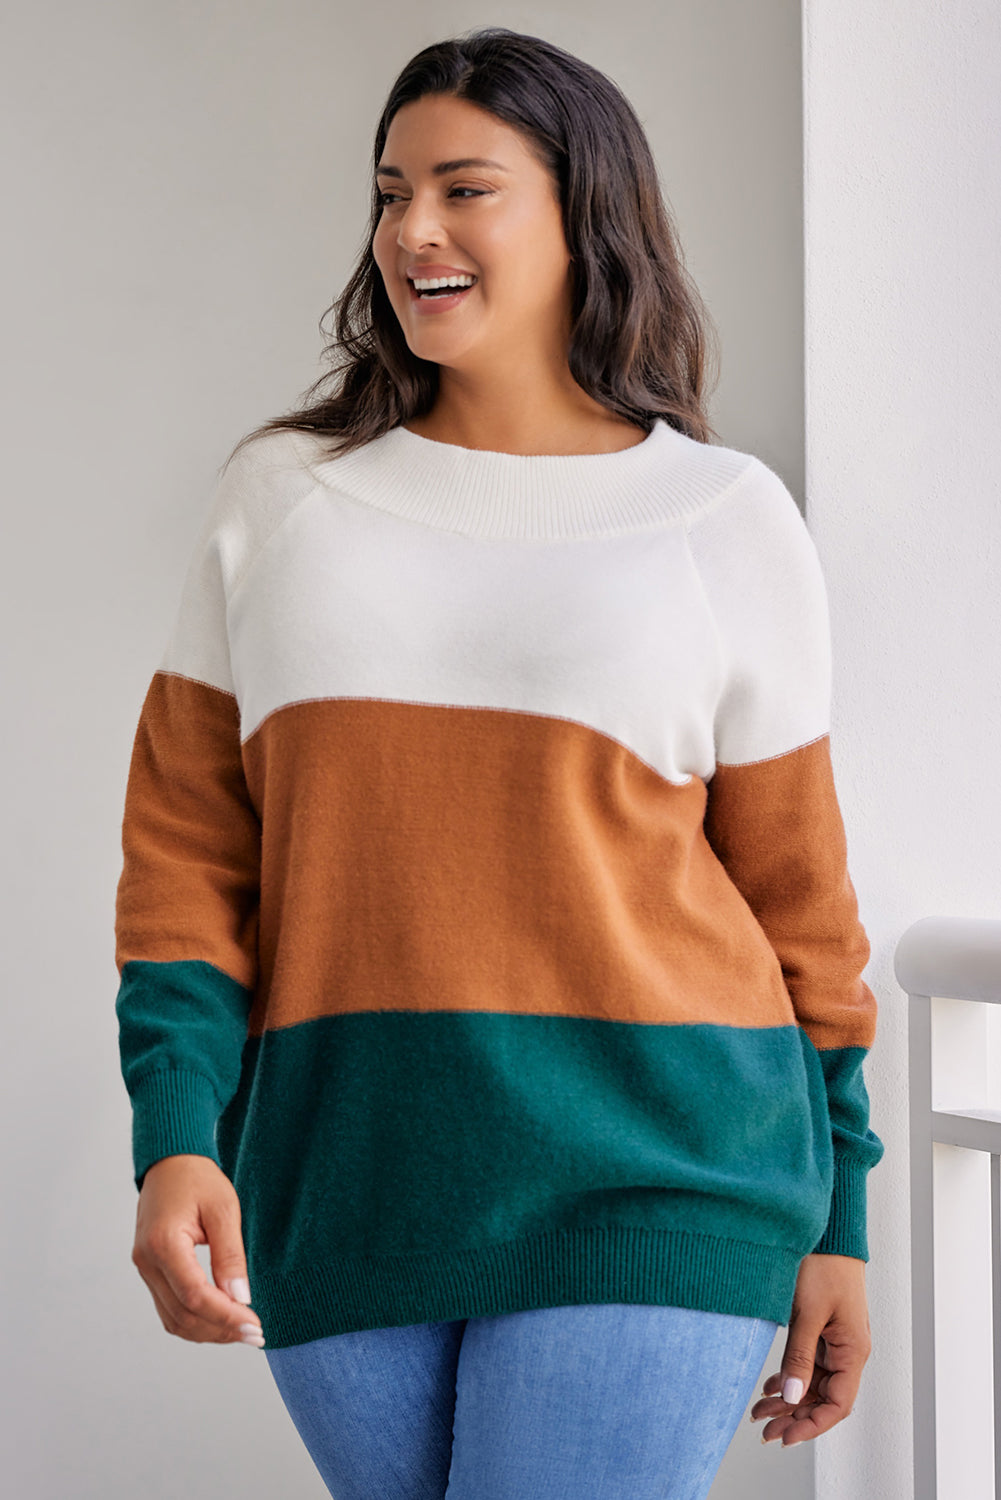 Rjav pulover velike velikosti z rebrastim robom v barvnih blokih